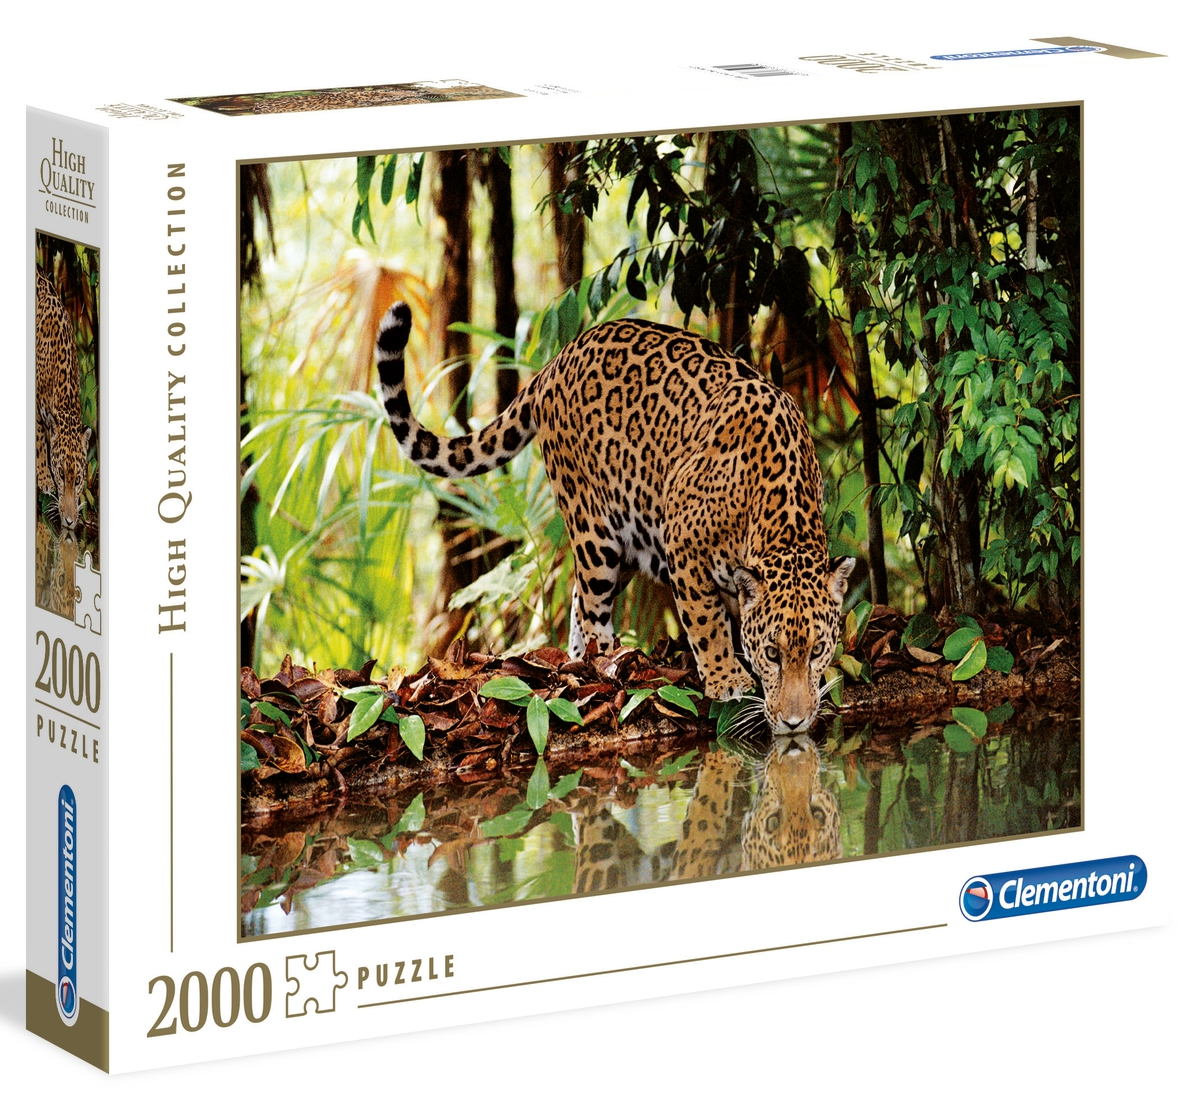 Puzzle 2000 piezas -Leopardo- Clementoni